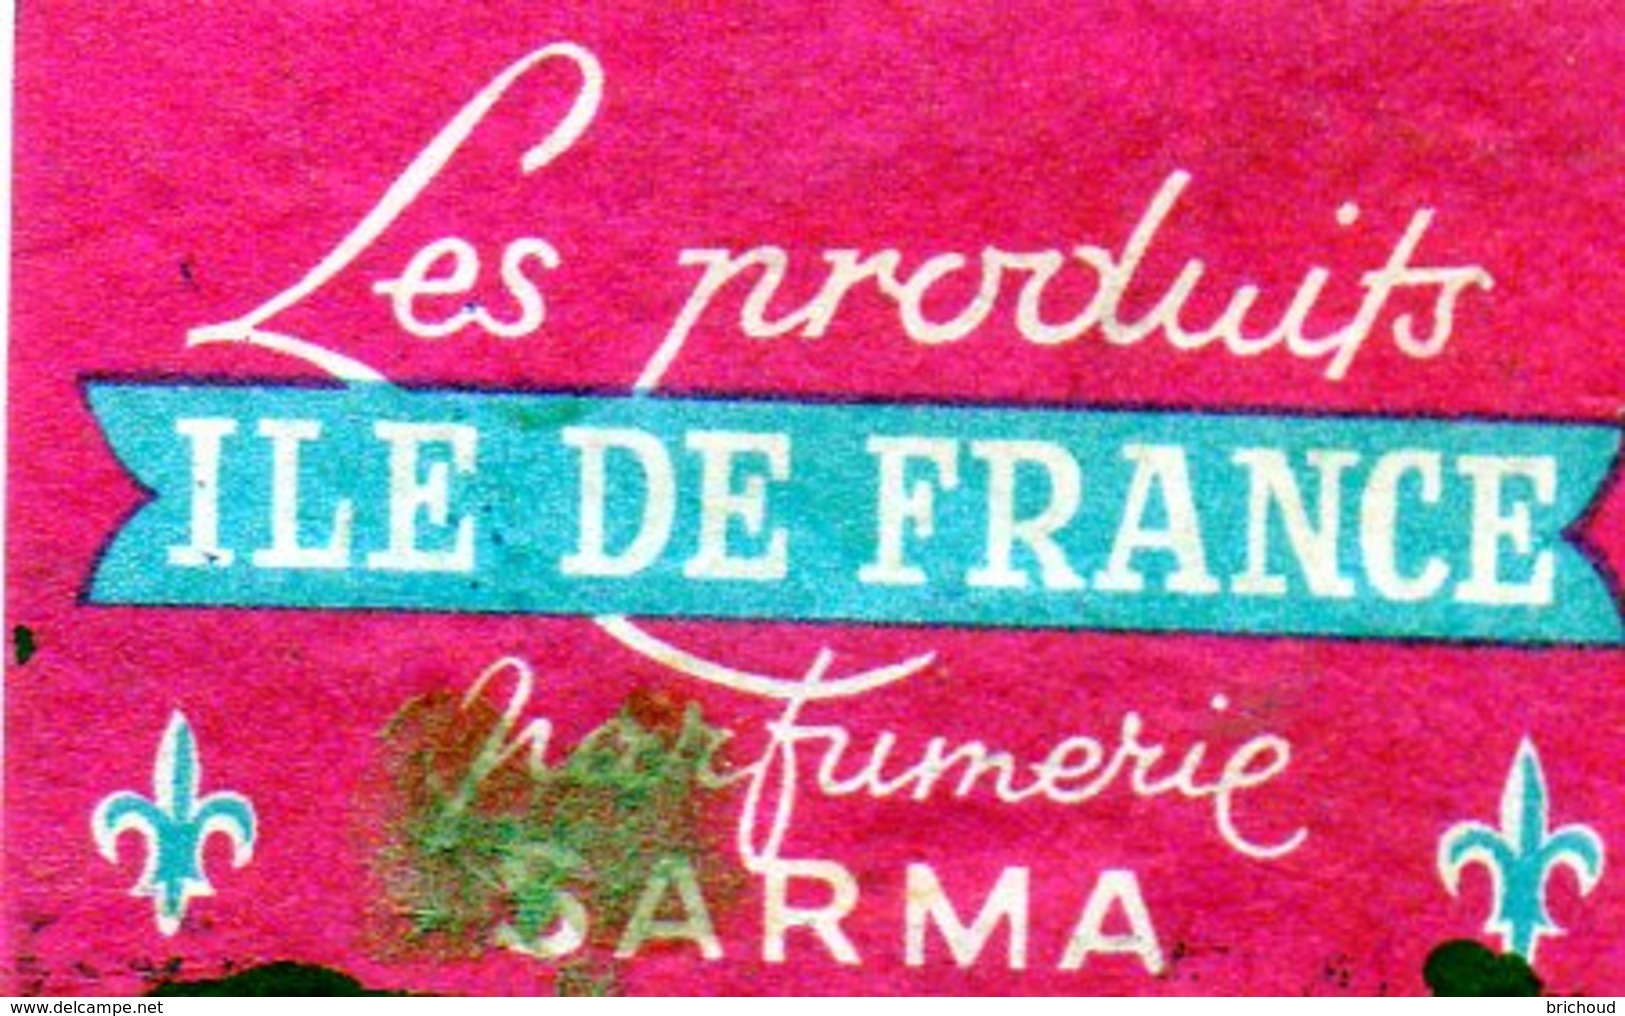 Les Produits Ile De France Parfumerie Sarma - Matchbox Labels